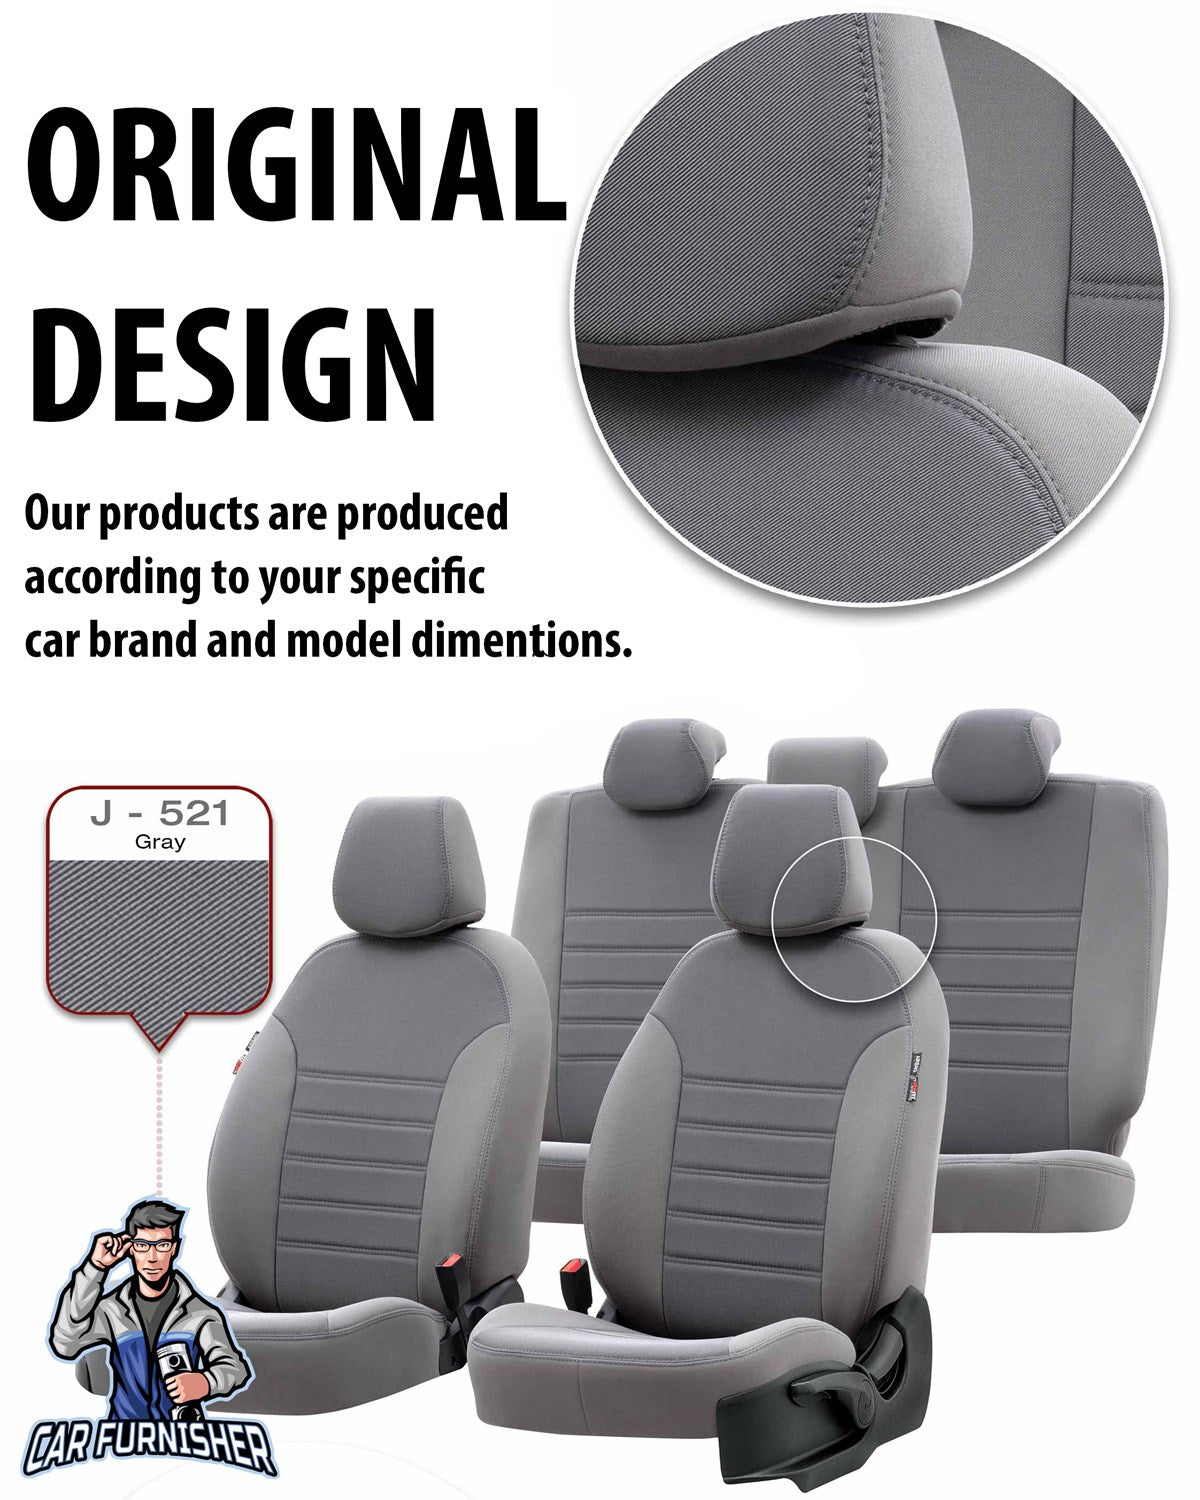 Volkswagen Bora Seat Cover Original Jacquard Design Beige Jacquard Fabric